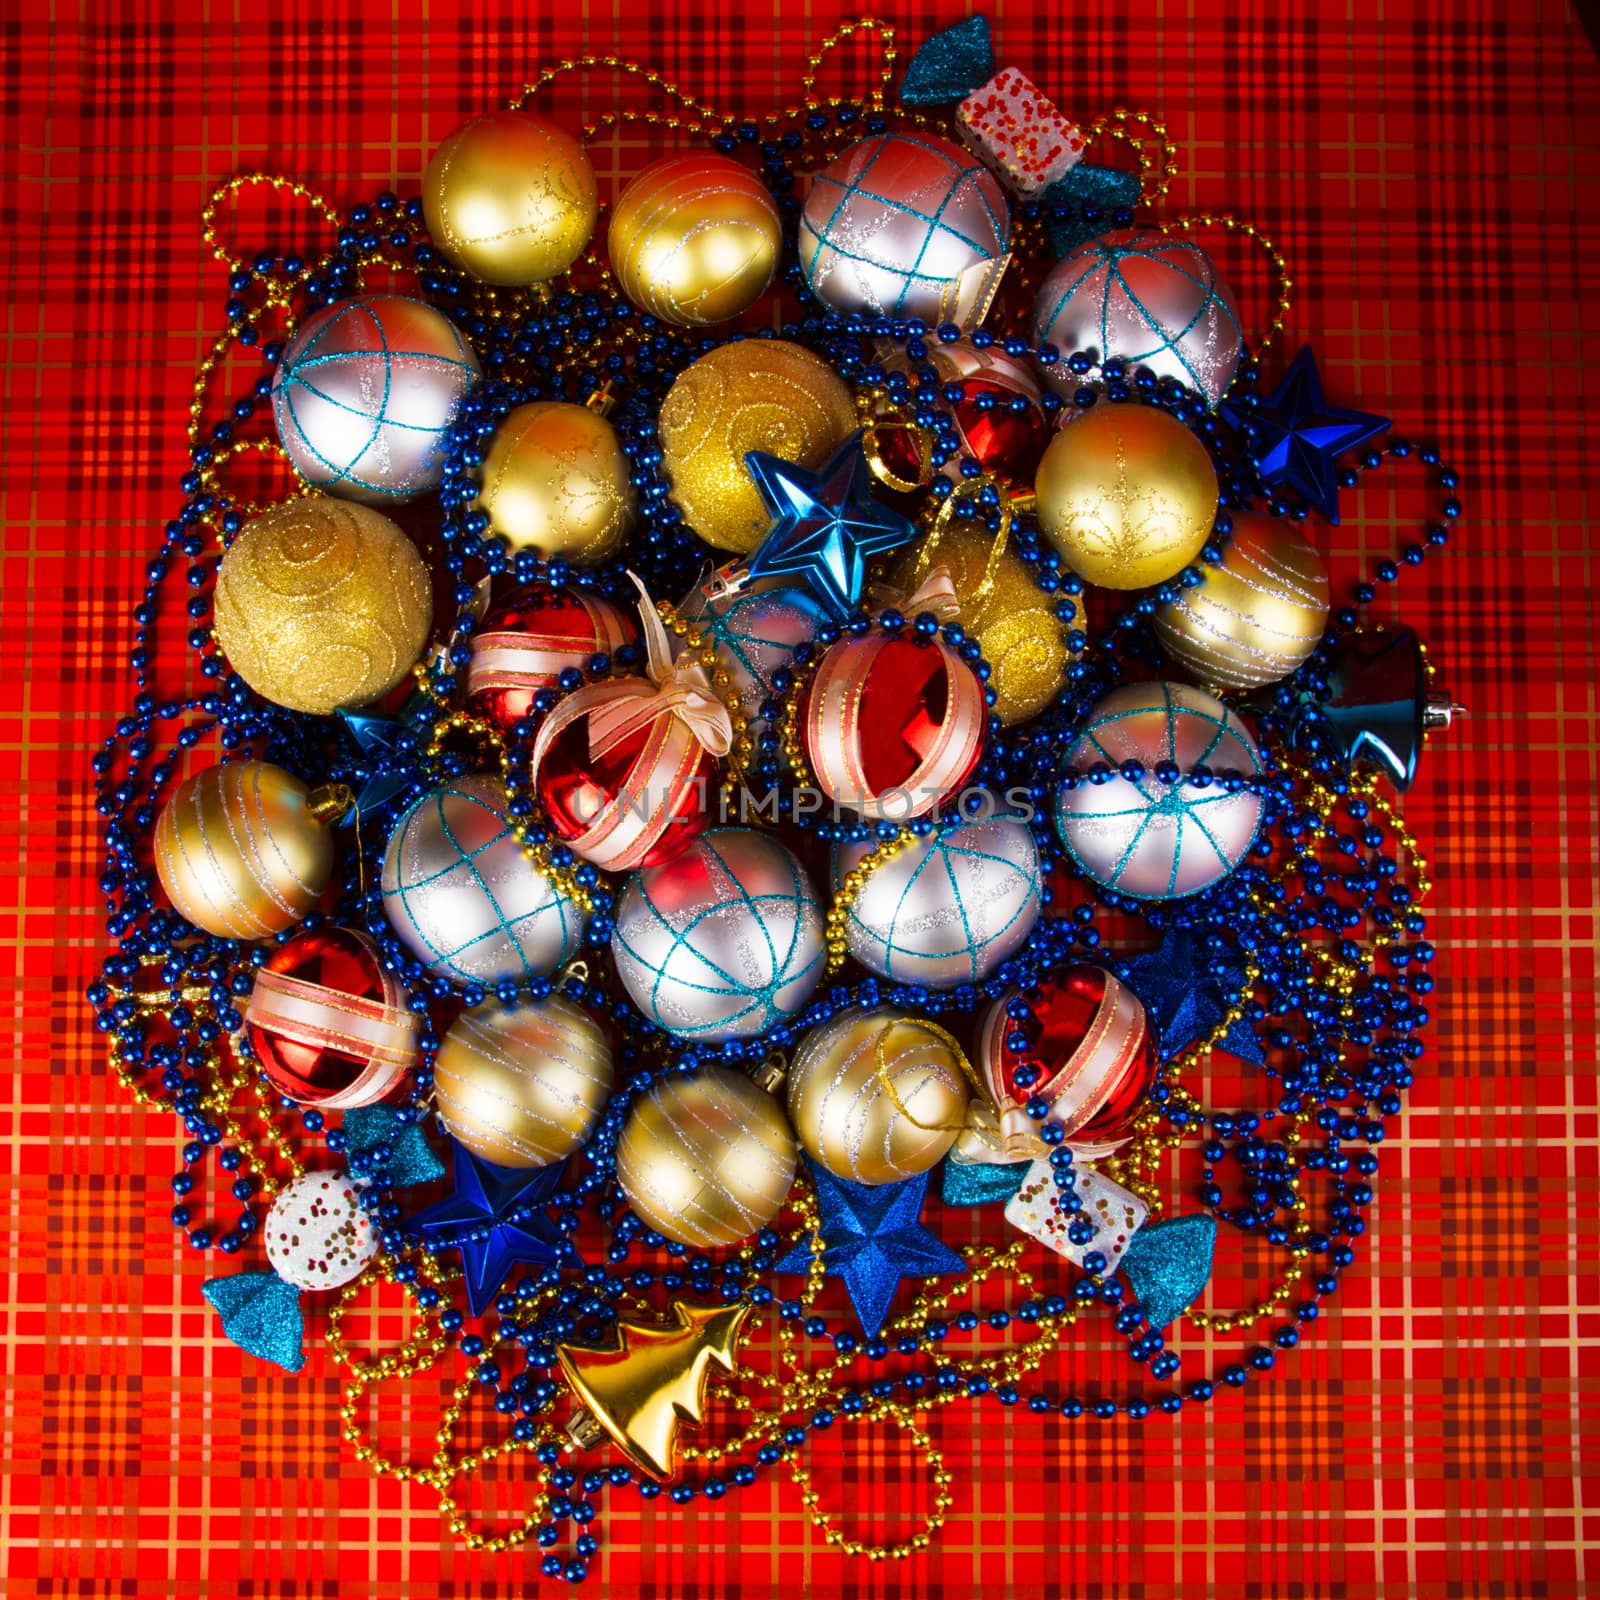 Christmas balls by grigorenko